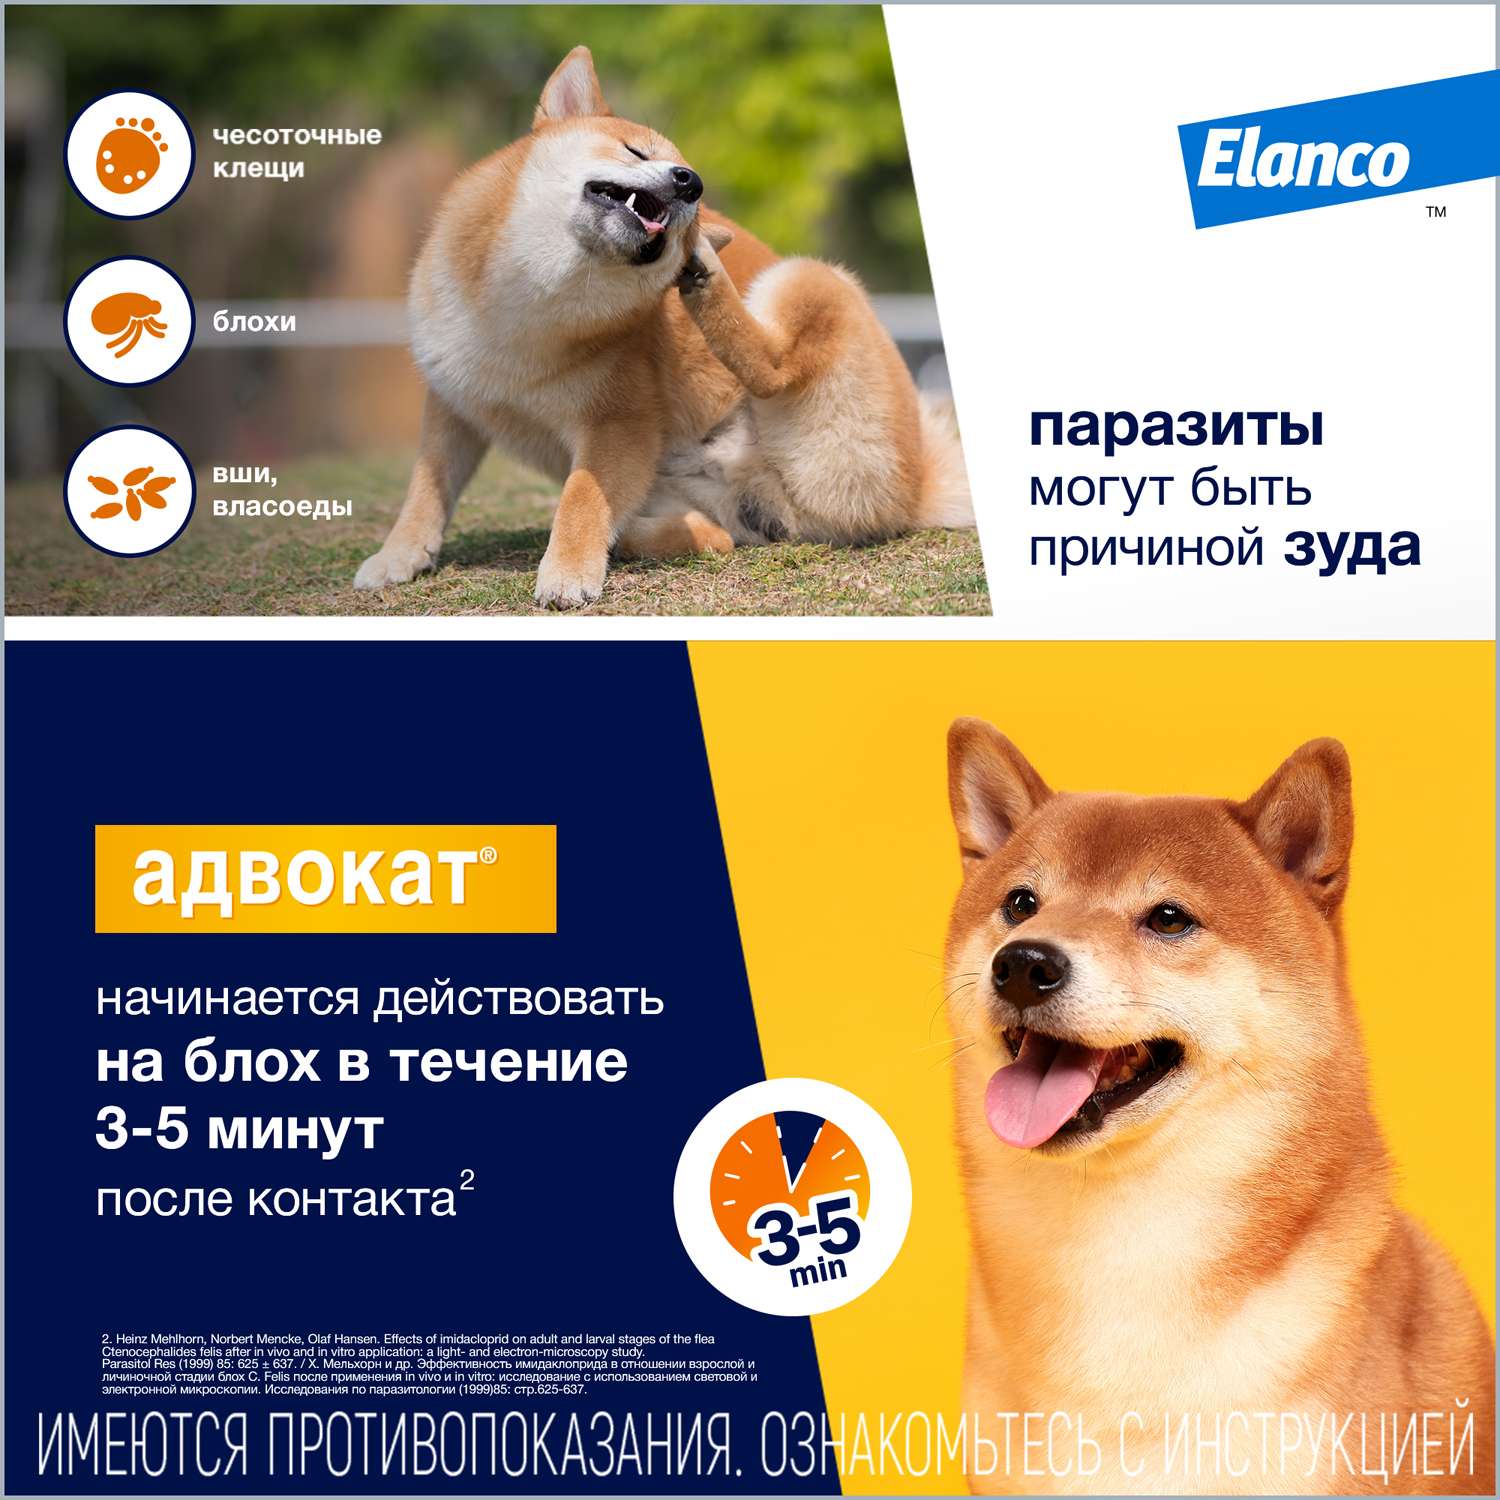 Препарат инсектоакарицидный для собак Elanco Адвокат 0.4мл 3пипетки - фото 5